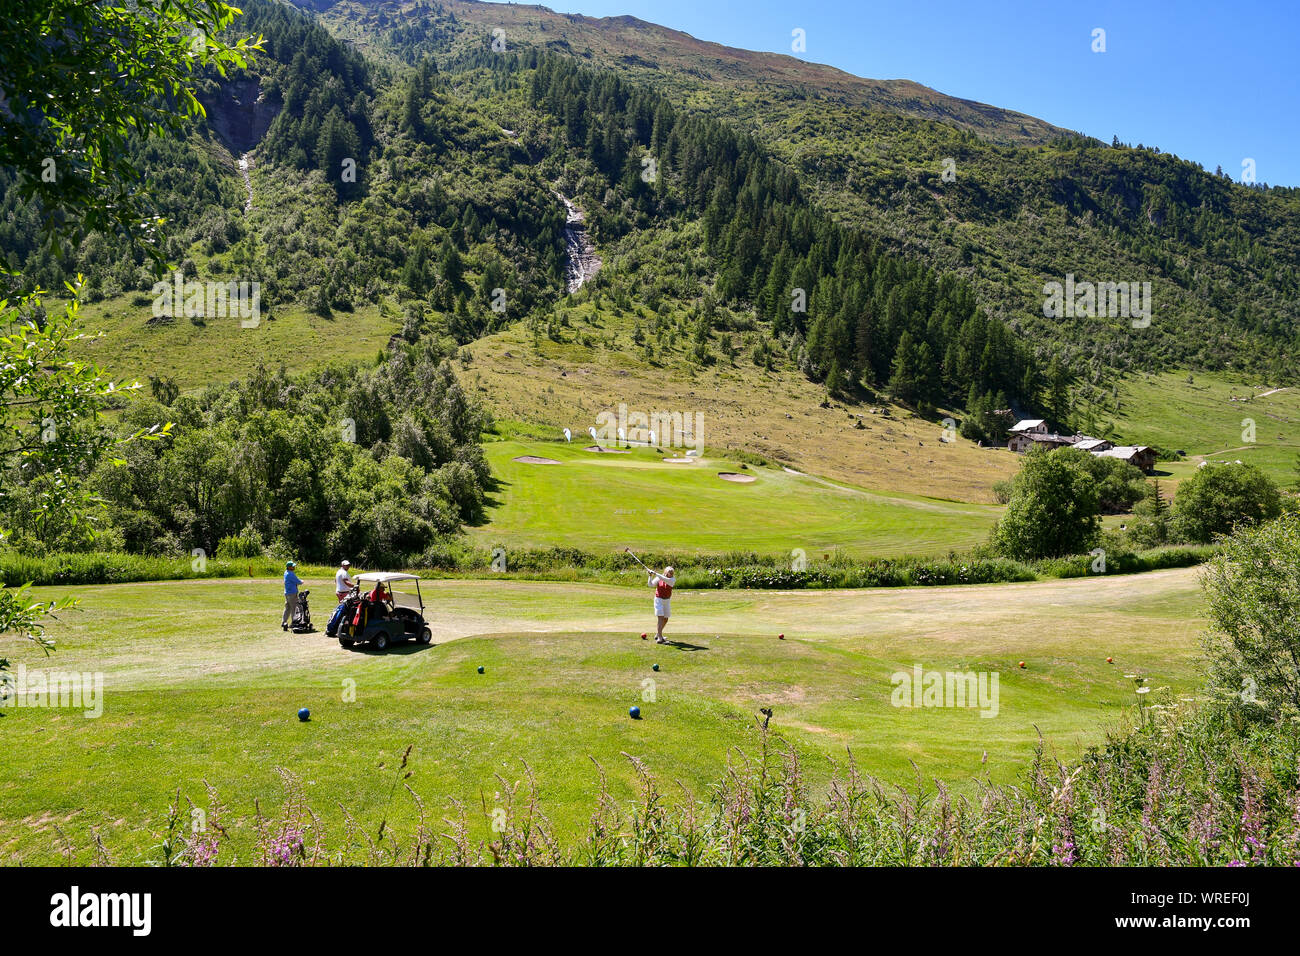 Vistas panorámicas del campo de golf Club Courmayeur et Grandes Jorasses en Val Ferret, con gente jugando al golf en verano, Courmayeur, Italia Foto de stock